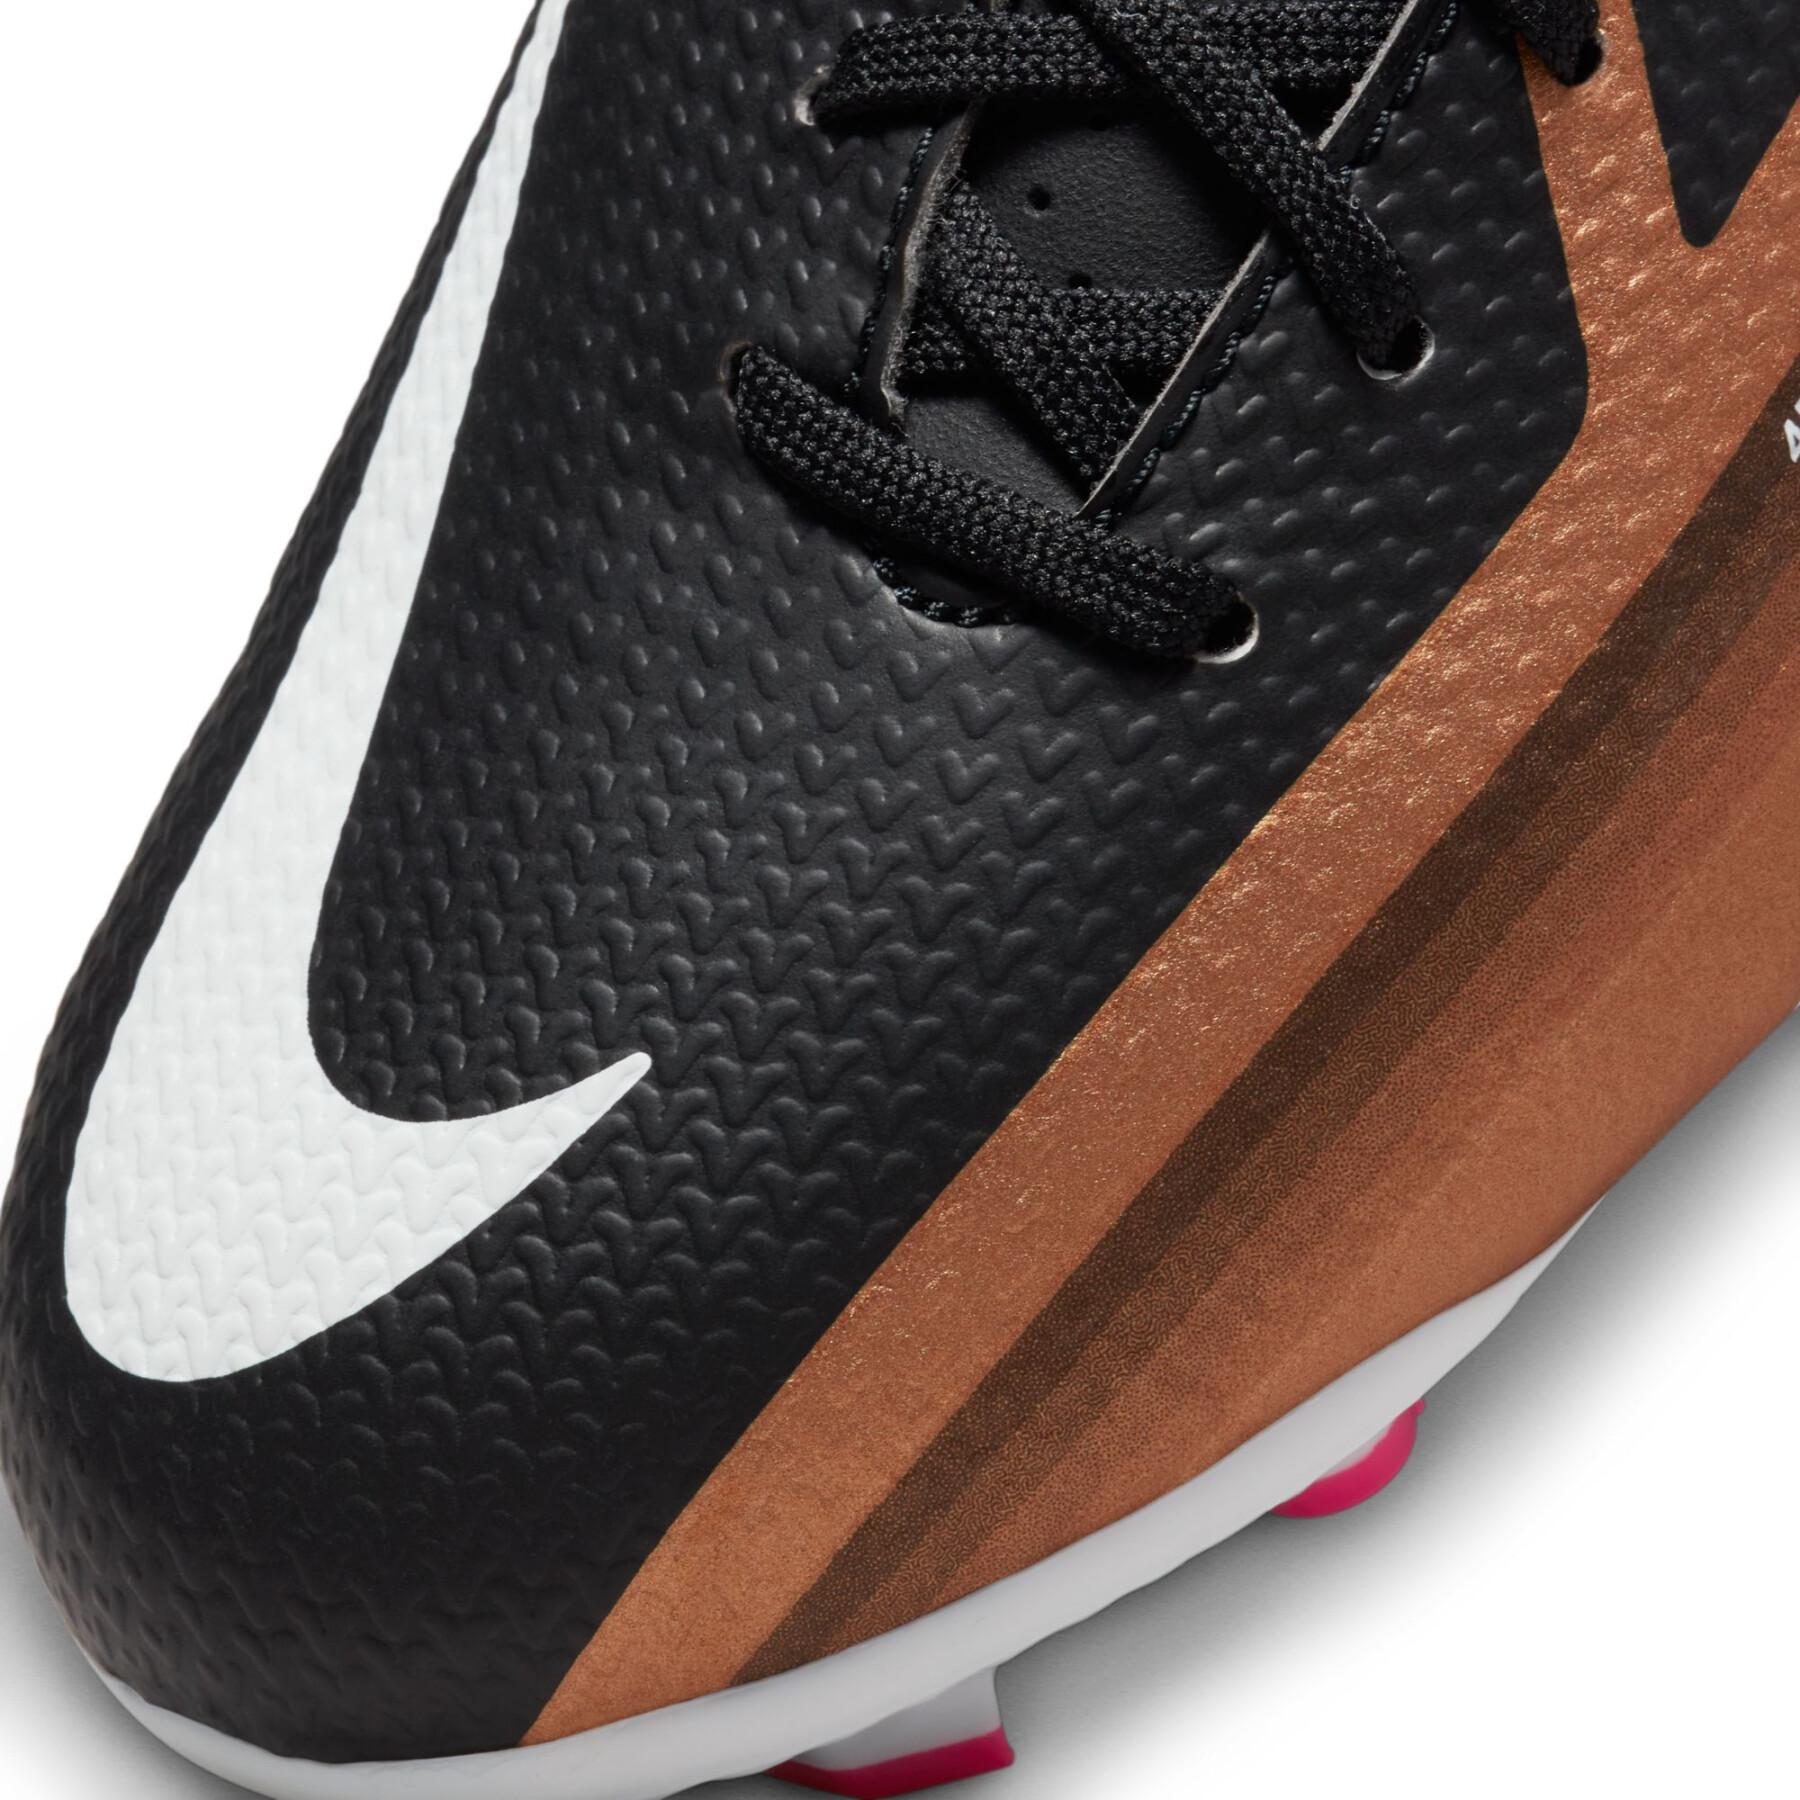 Sapatos de futebol para crianças Nike PhantoGT2 Academy FG/MG - Generation Pack